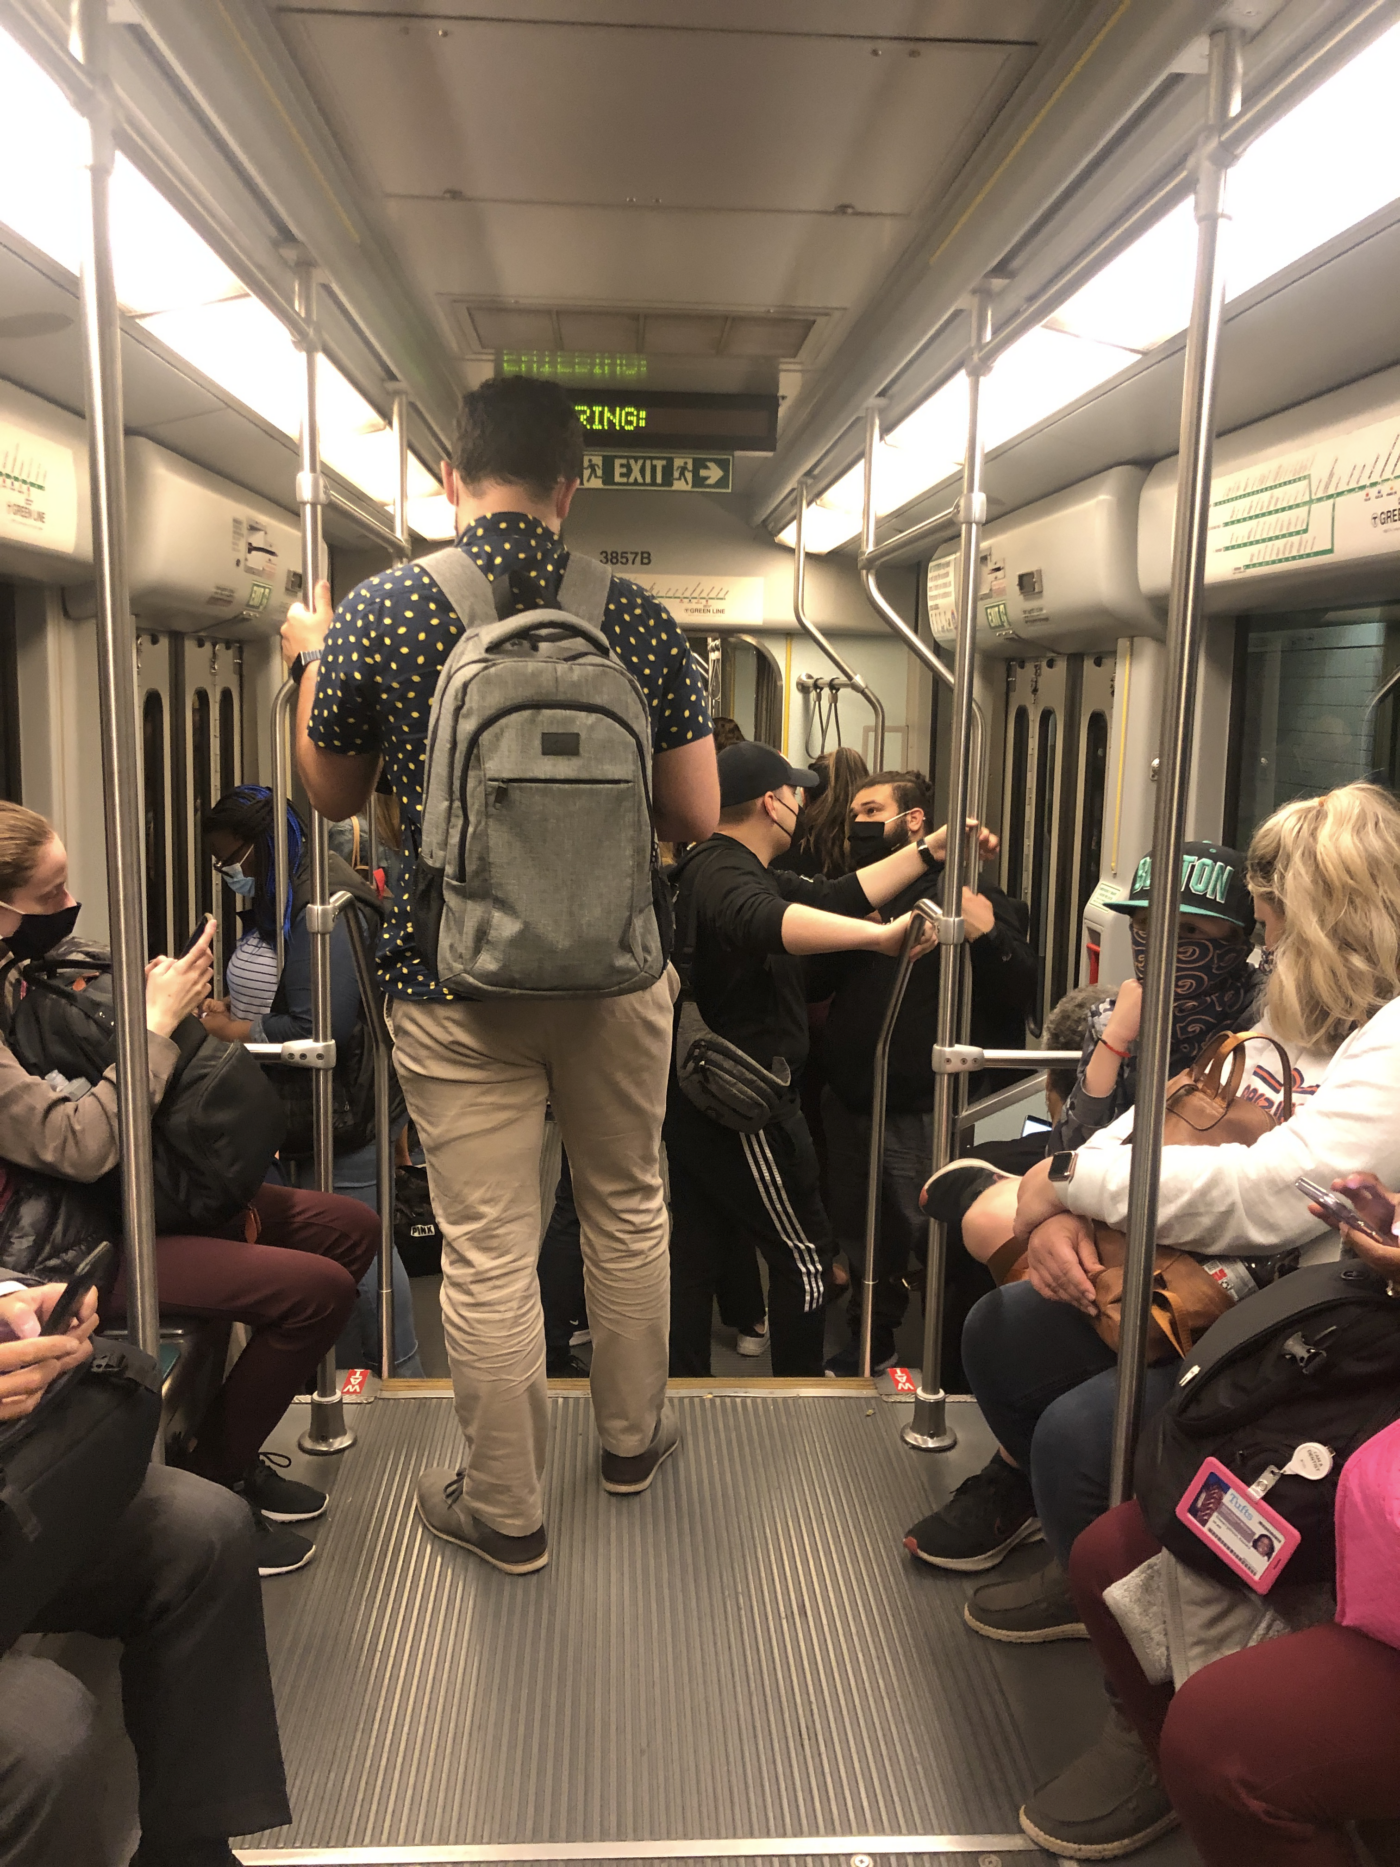 crowded subway car